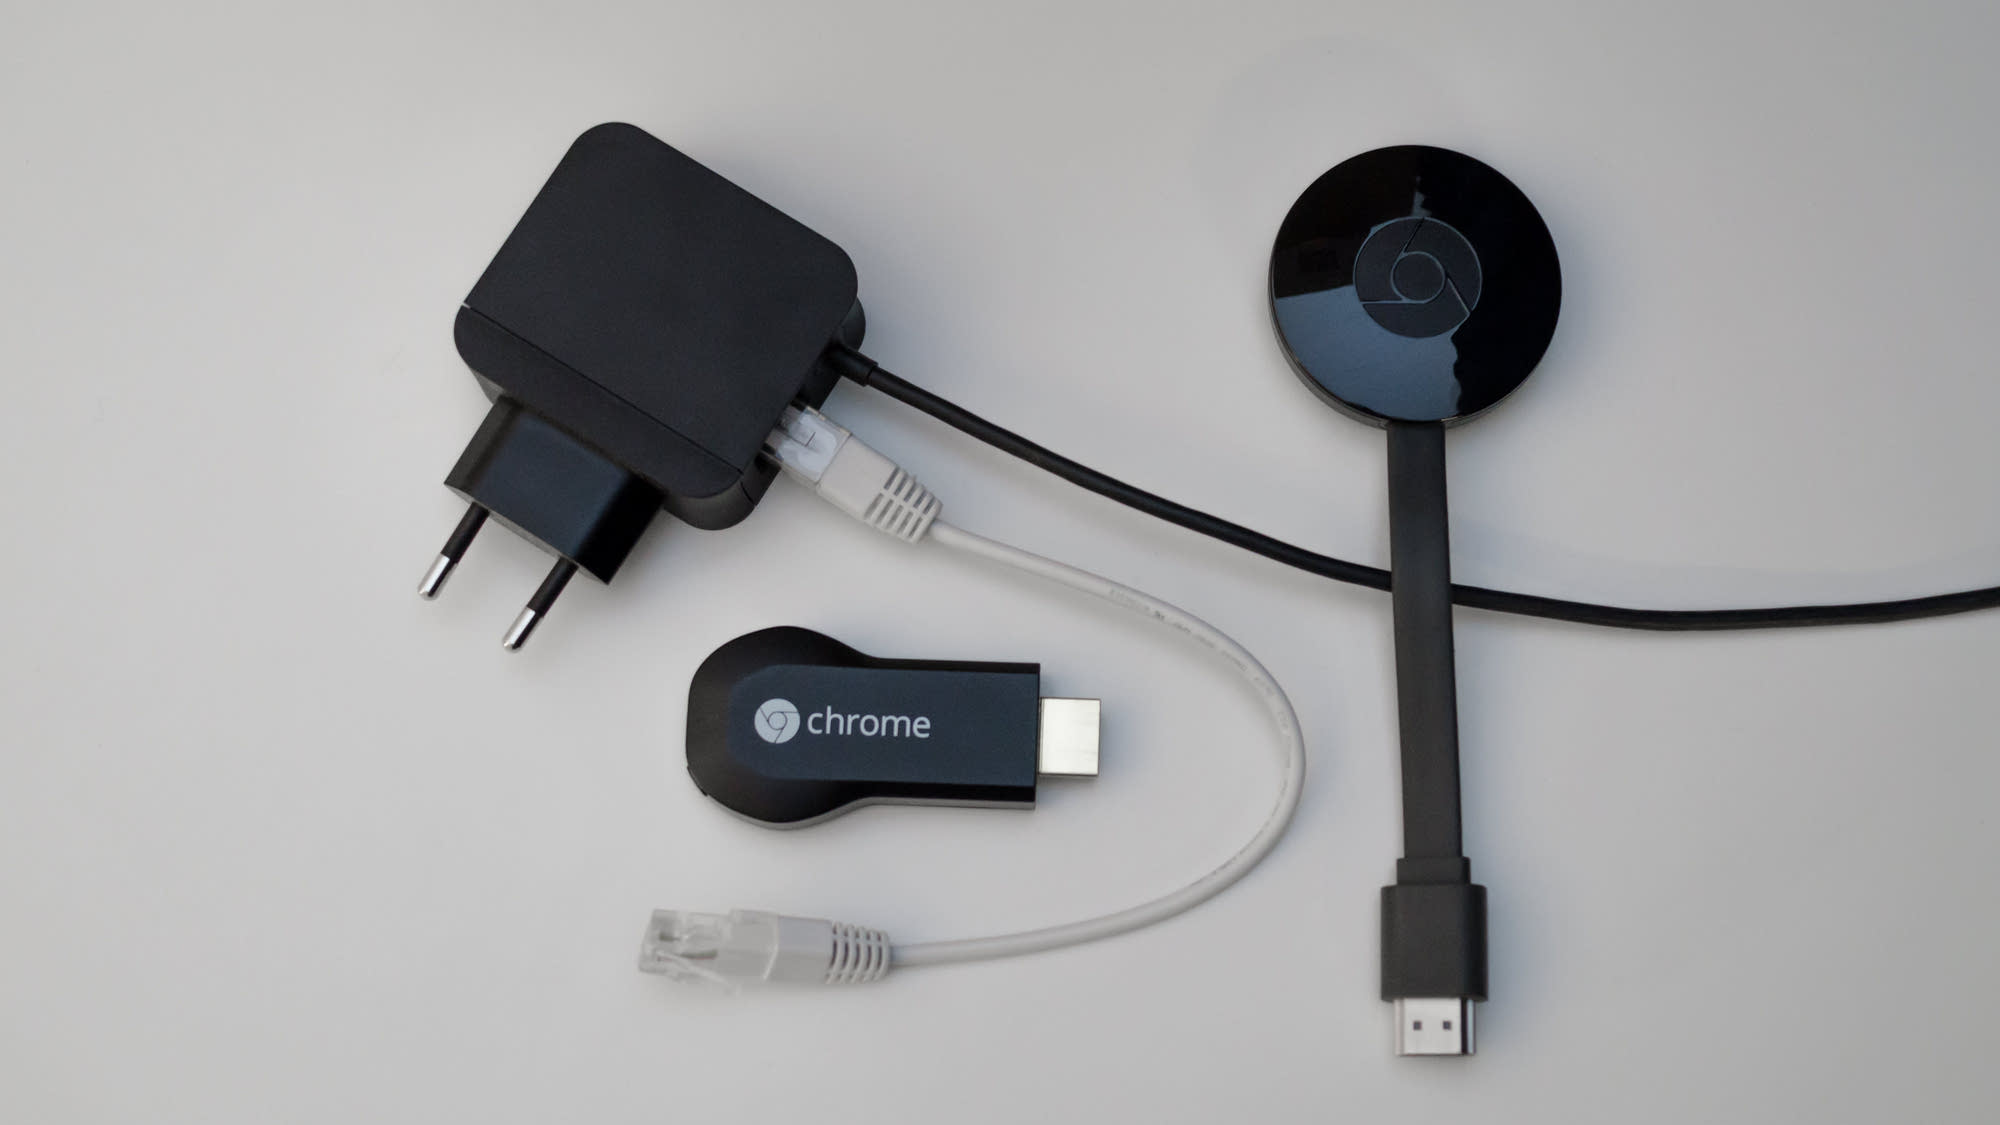 Google Chromecast gets Ethernet adapter